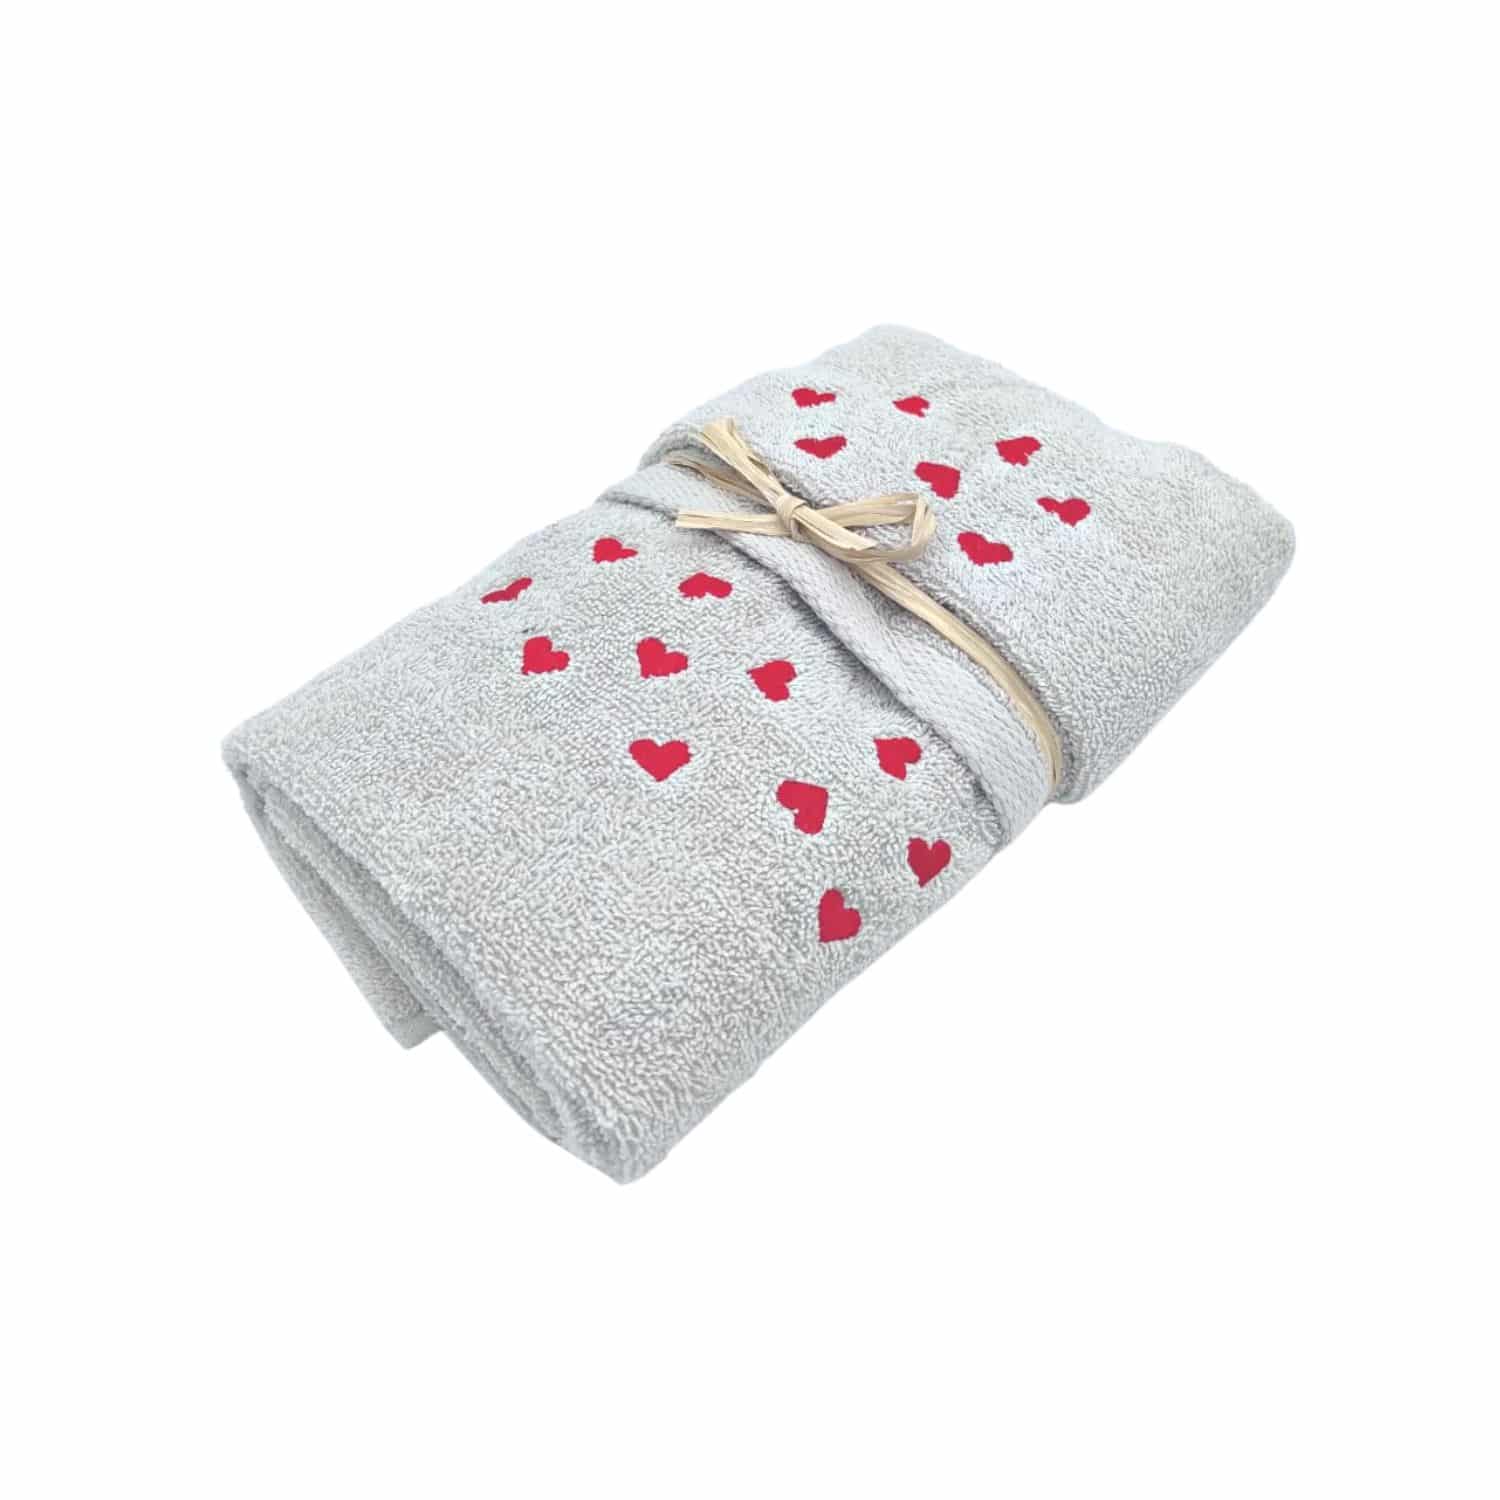 set-asciugamani-1-1-cuoricini-rossi-grigio-cotone-spugna-ricamata-confezione